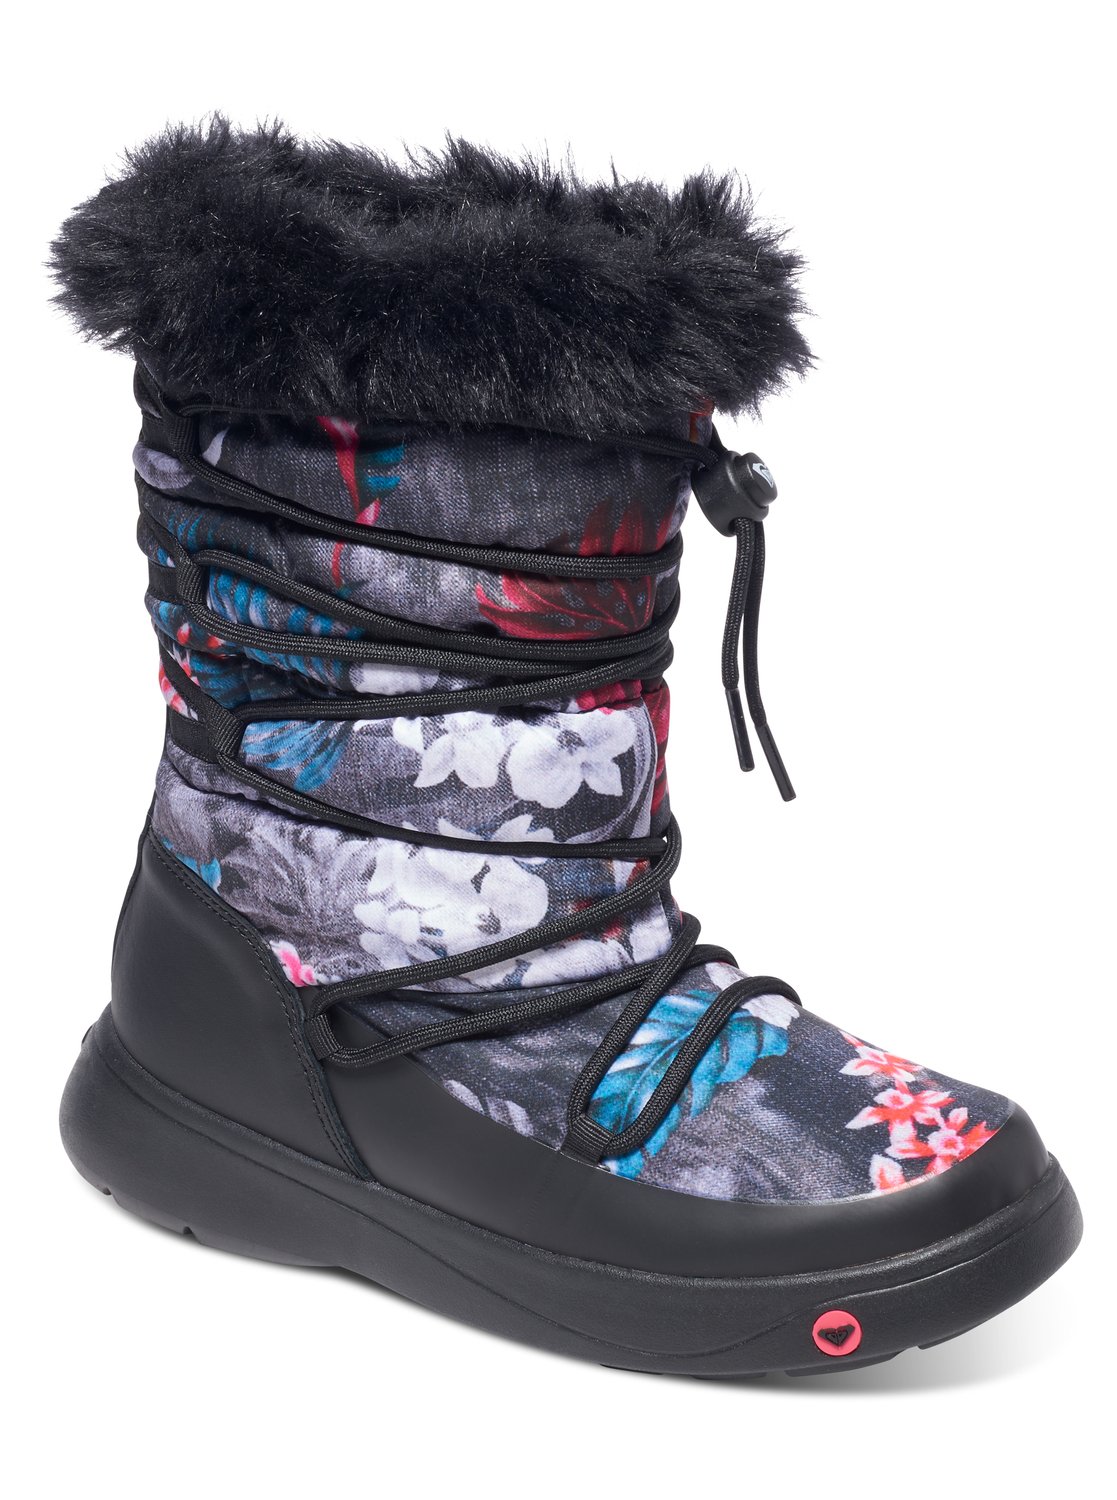 Venta > roxy botas nieve > en stock